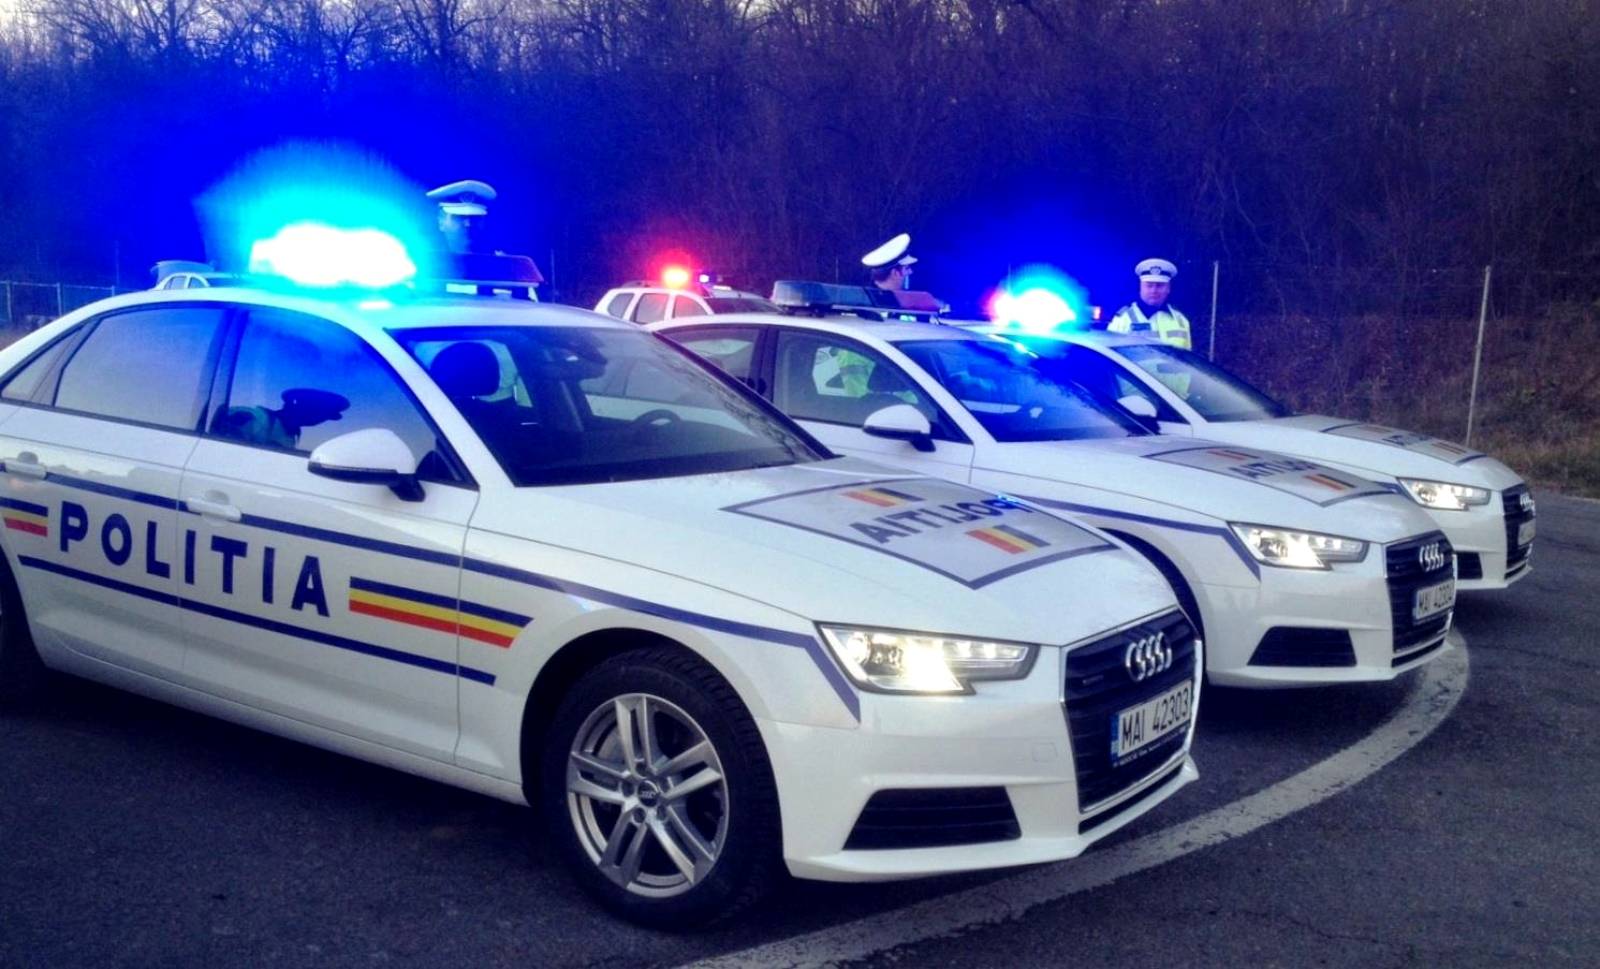 Autounfalltelefon der rumänischen Polizei